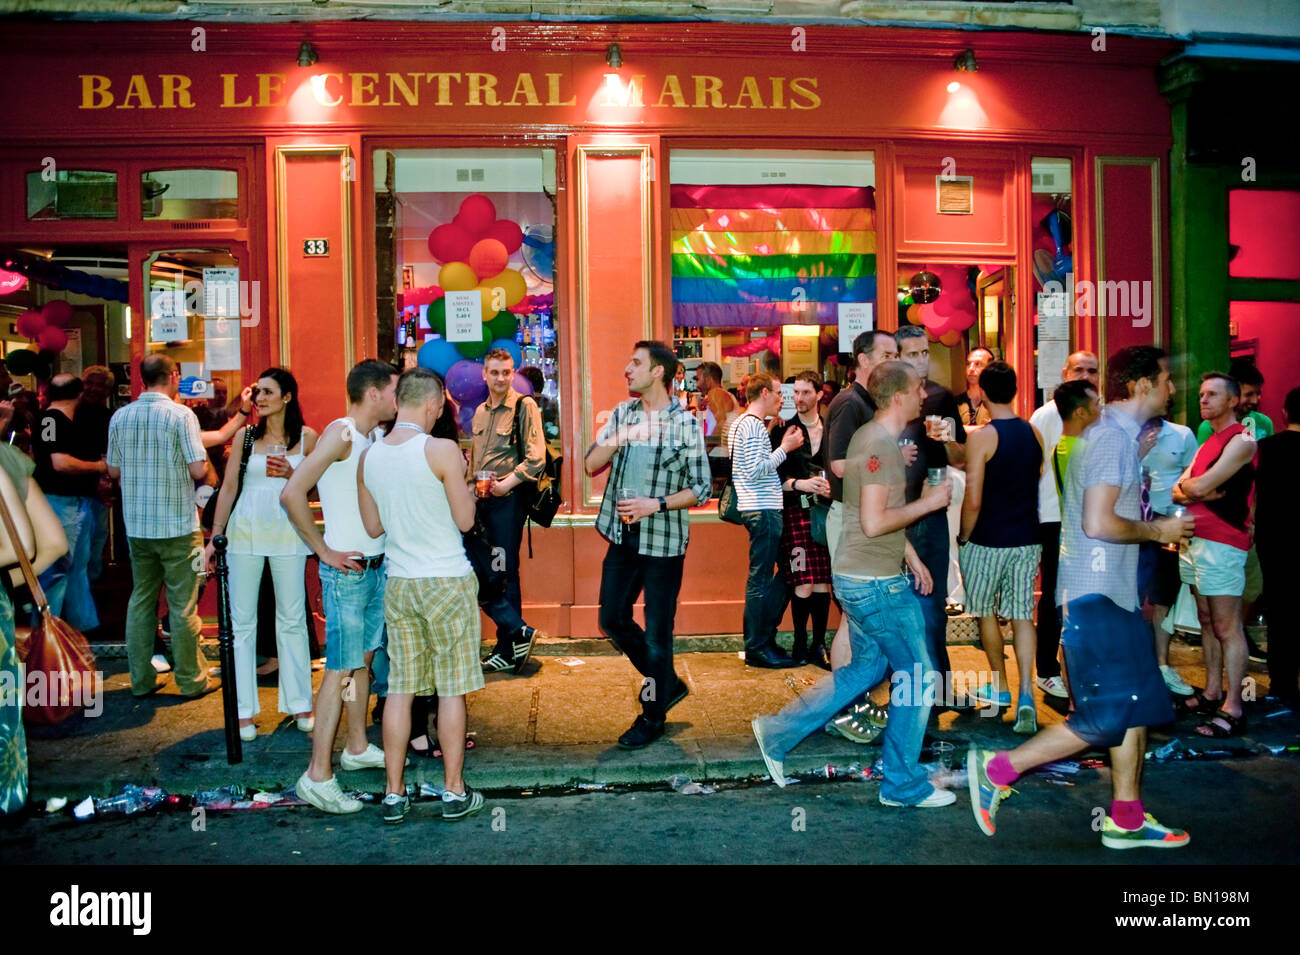 Bar gay paris Banque de photographies et d'images à haute résolution - Alamy